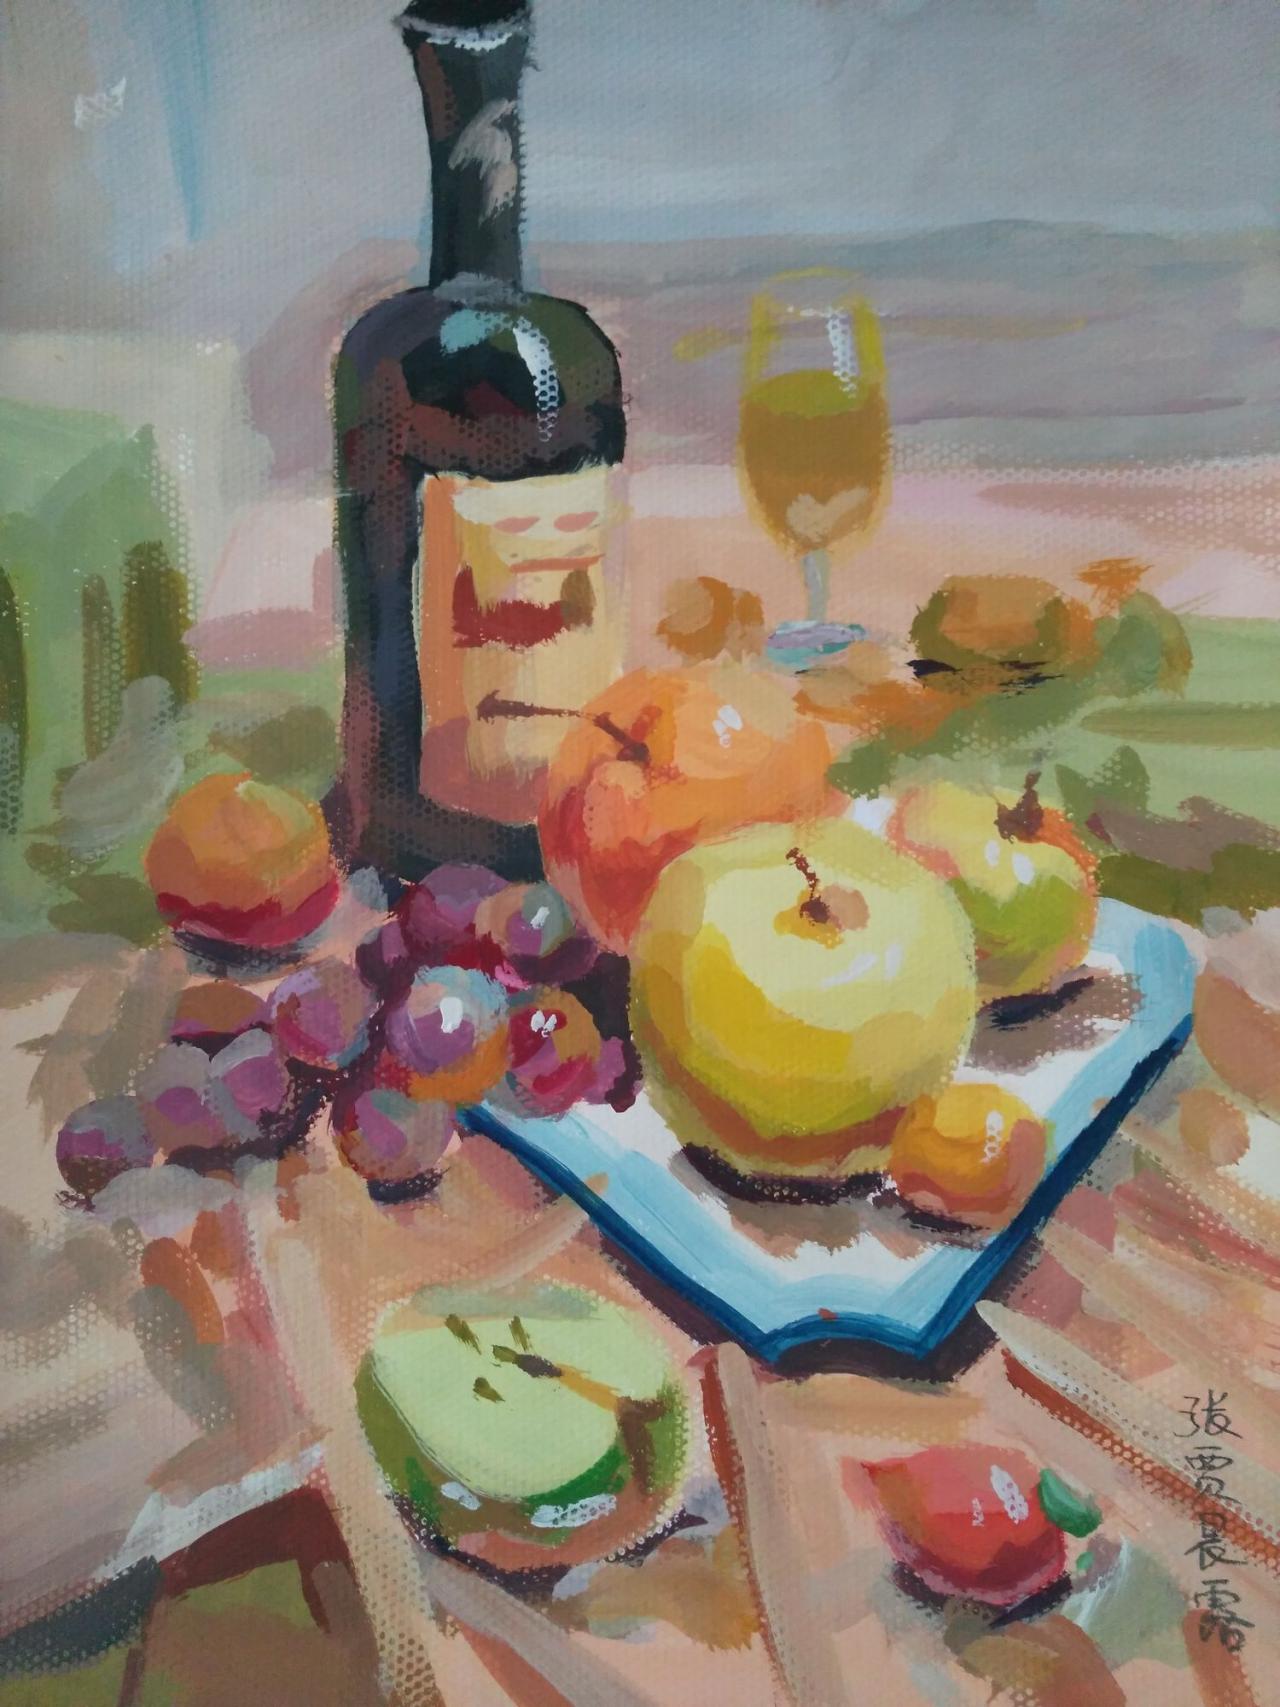 水粉静物 酒瓶、玻璃杯、葡萄、苹果、辣椒等 张贾晨露画